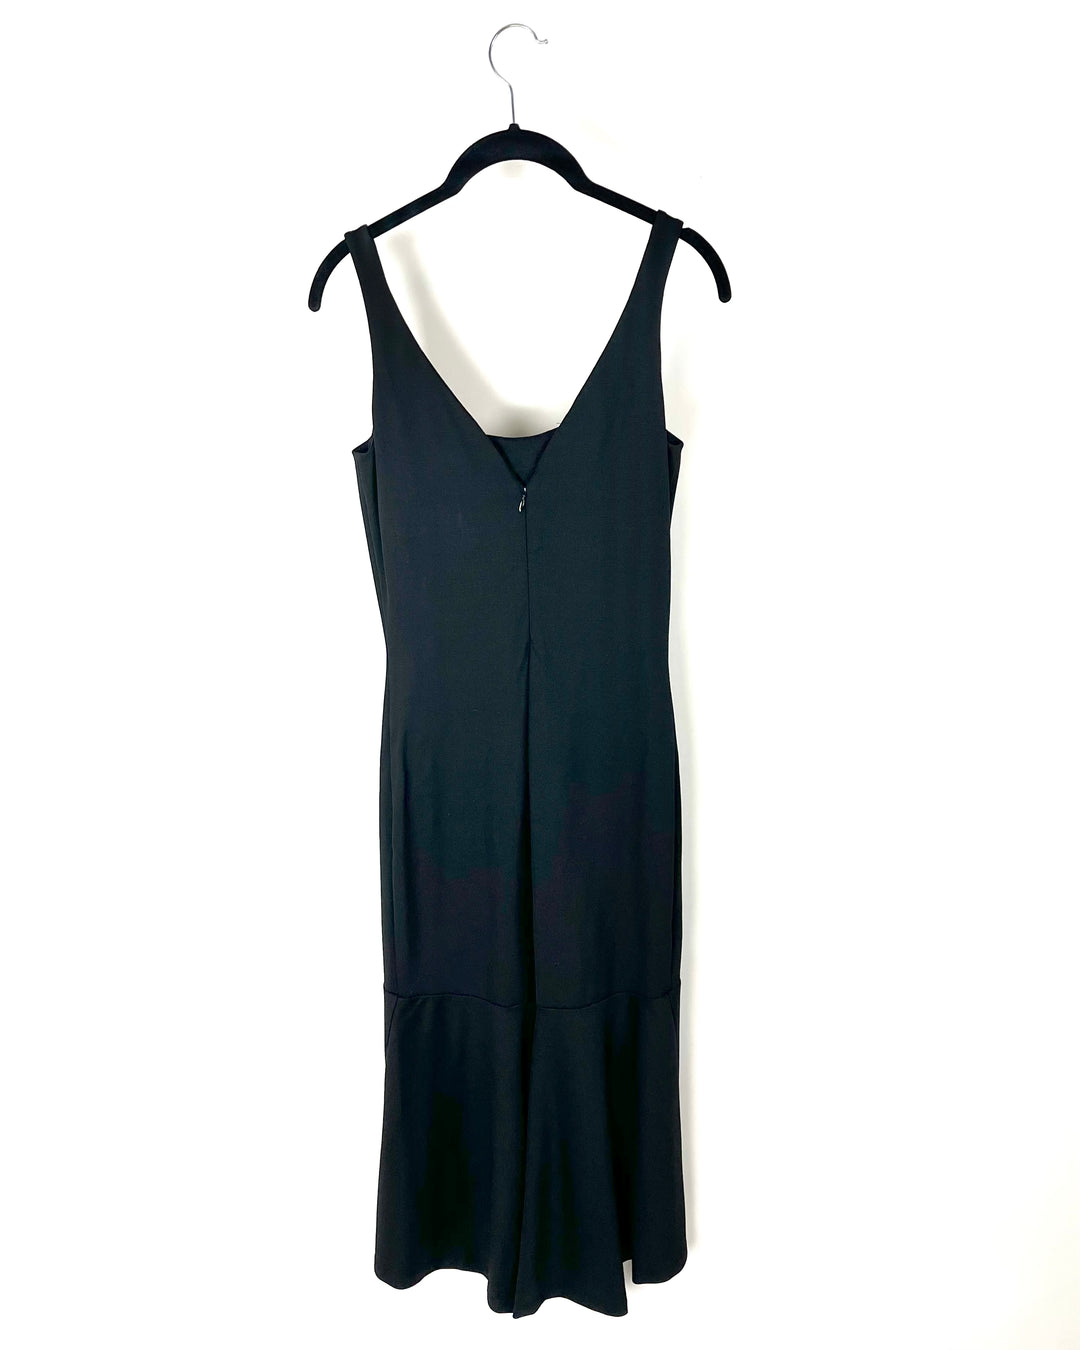 Black Ruffle Dress - Size 4/6